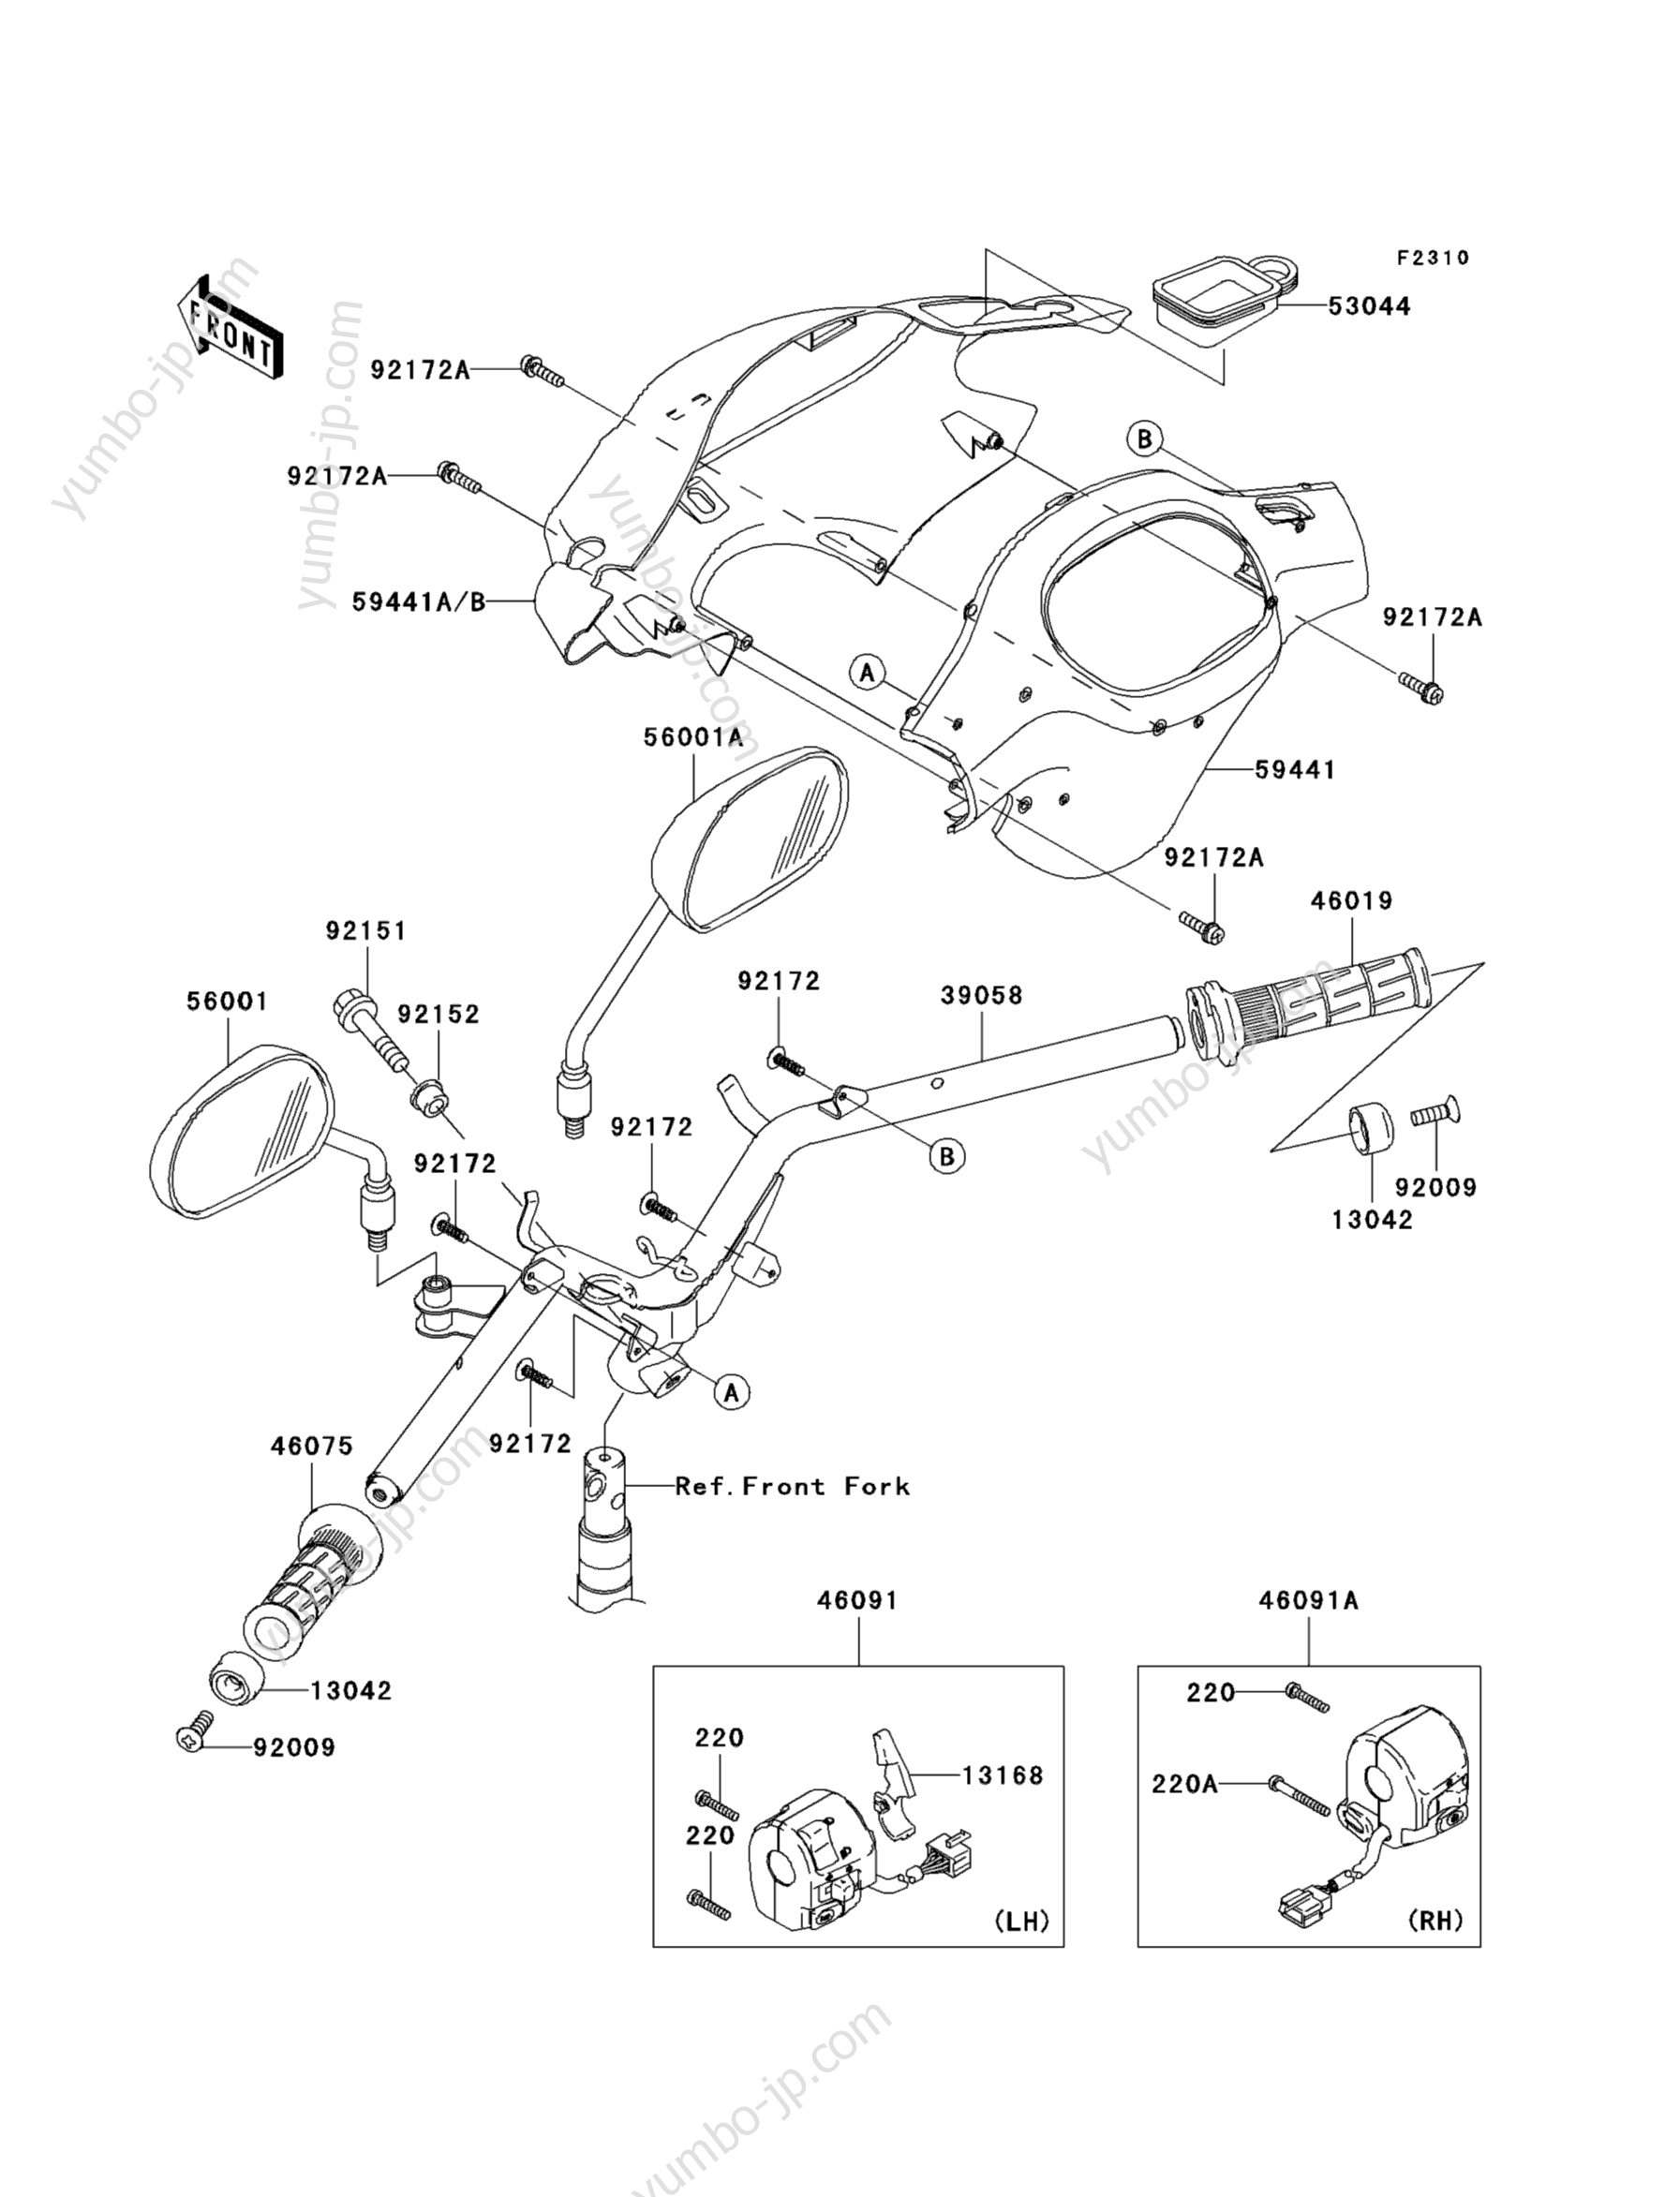 Румпель (рукоятка управления) для мотоциклов KAWASAKI BRITZ R (AN112DAF) 2010 г.